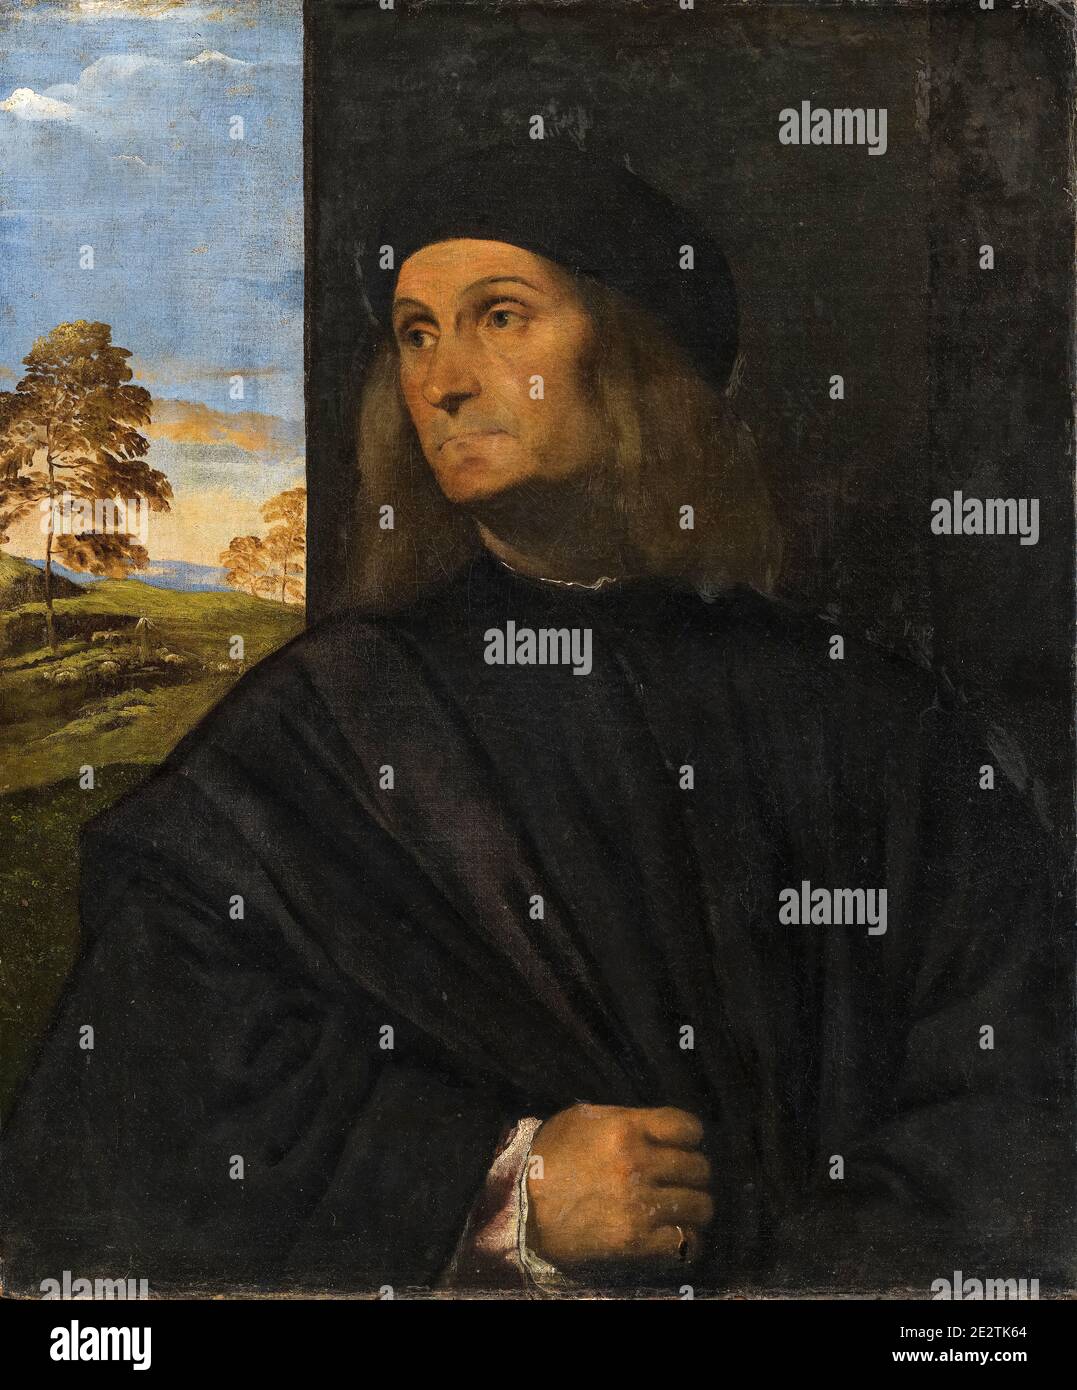 Giovanni Bellini (circa 1430-1516), peintre italien, portrait de Titien, Tiziano Vecellio, 1510-1512 Banque D'Images